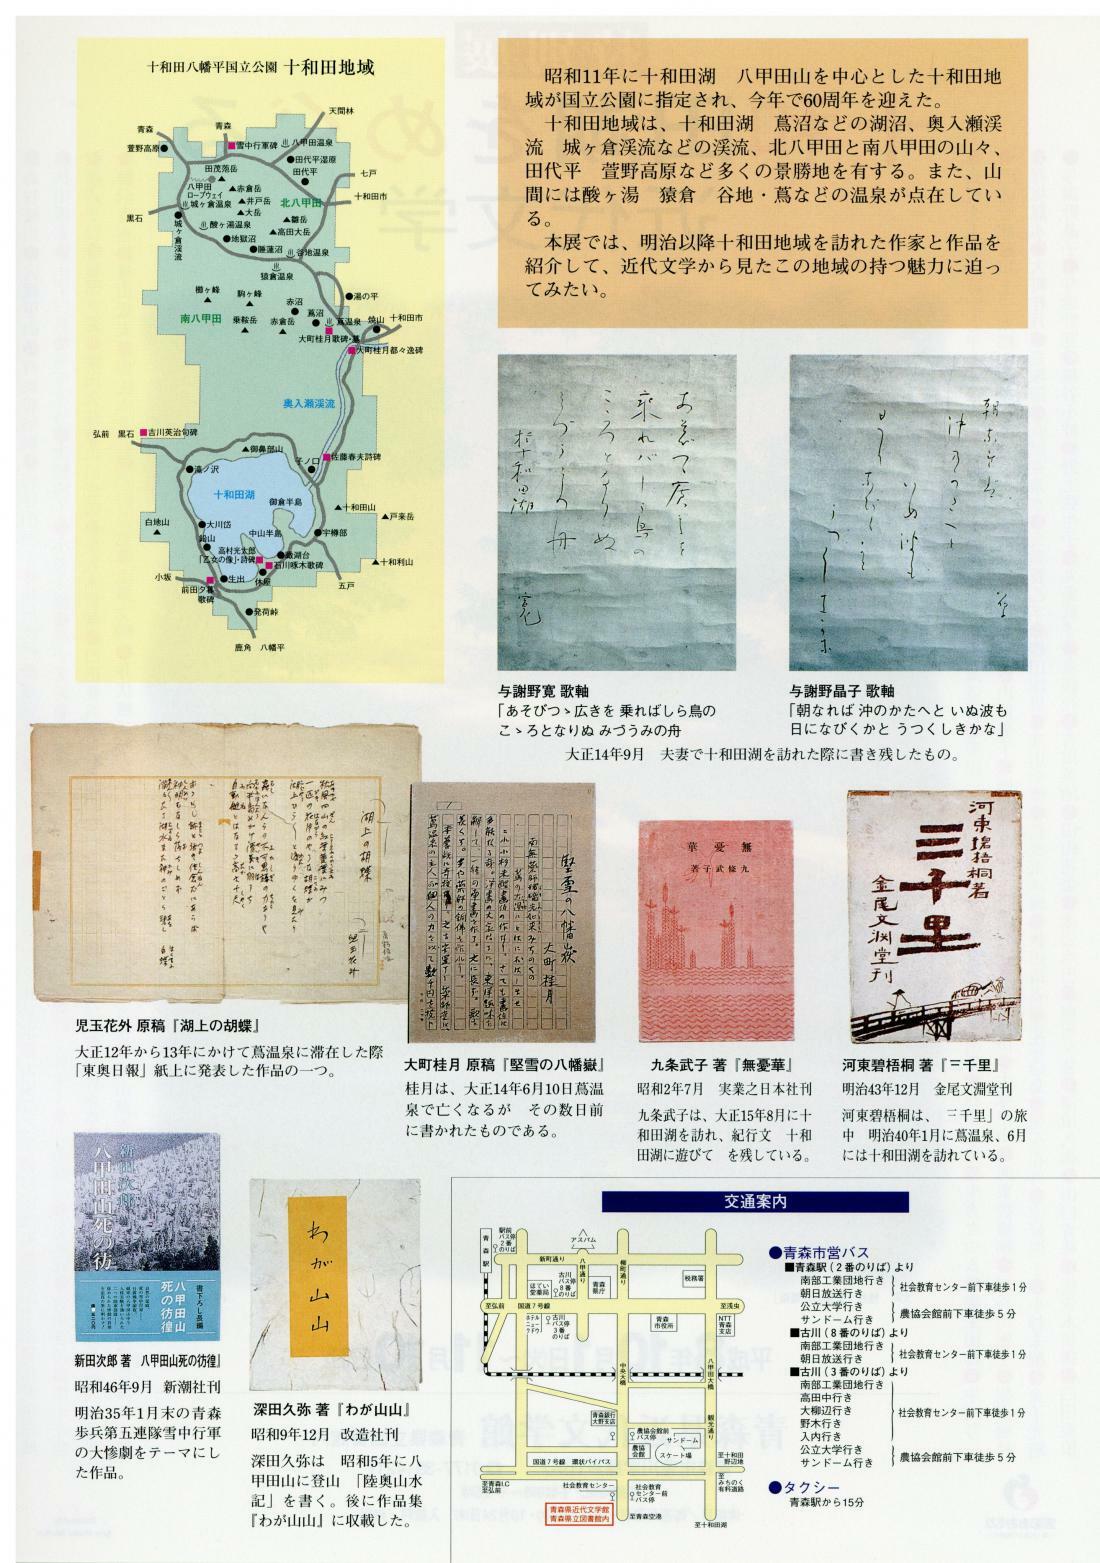 十和田湖をめぐる近代文学の画像